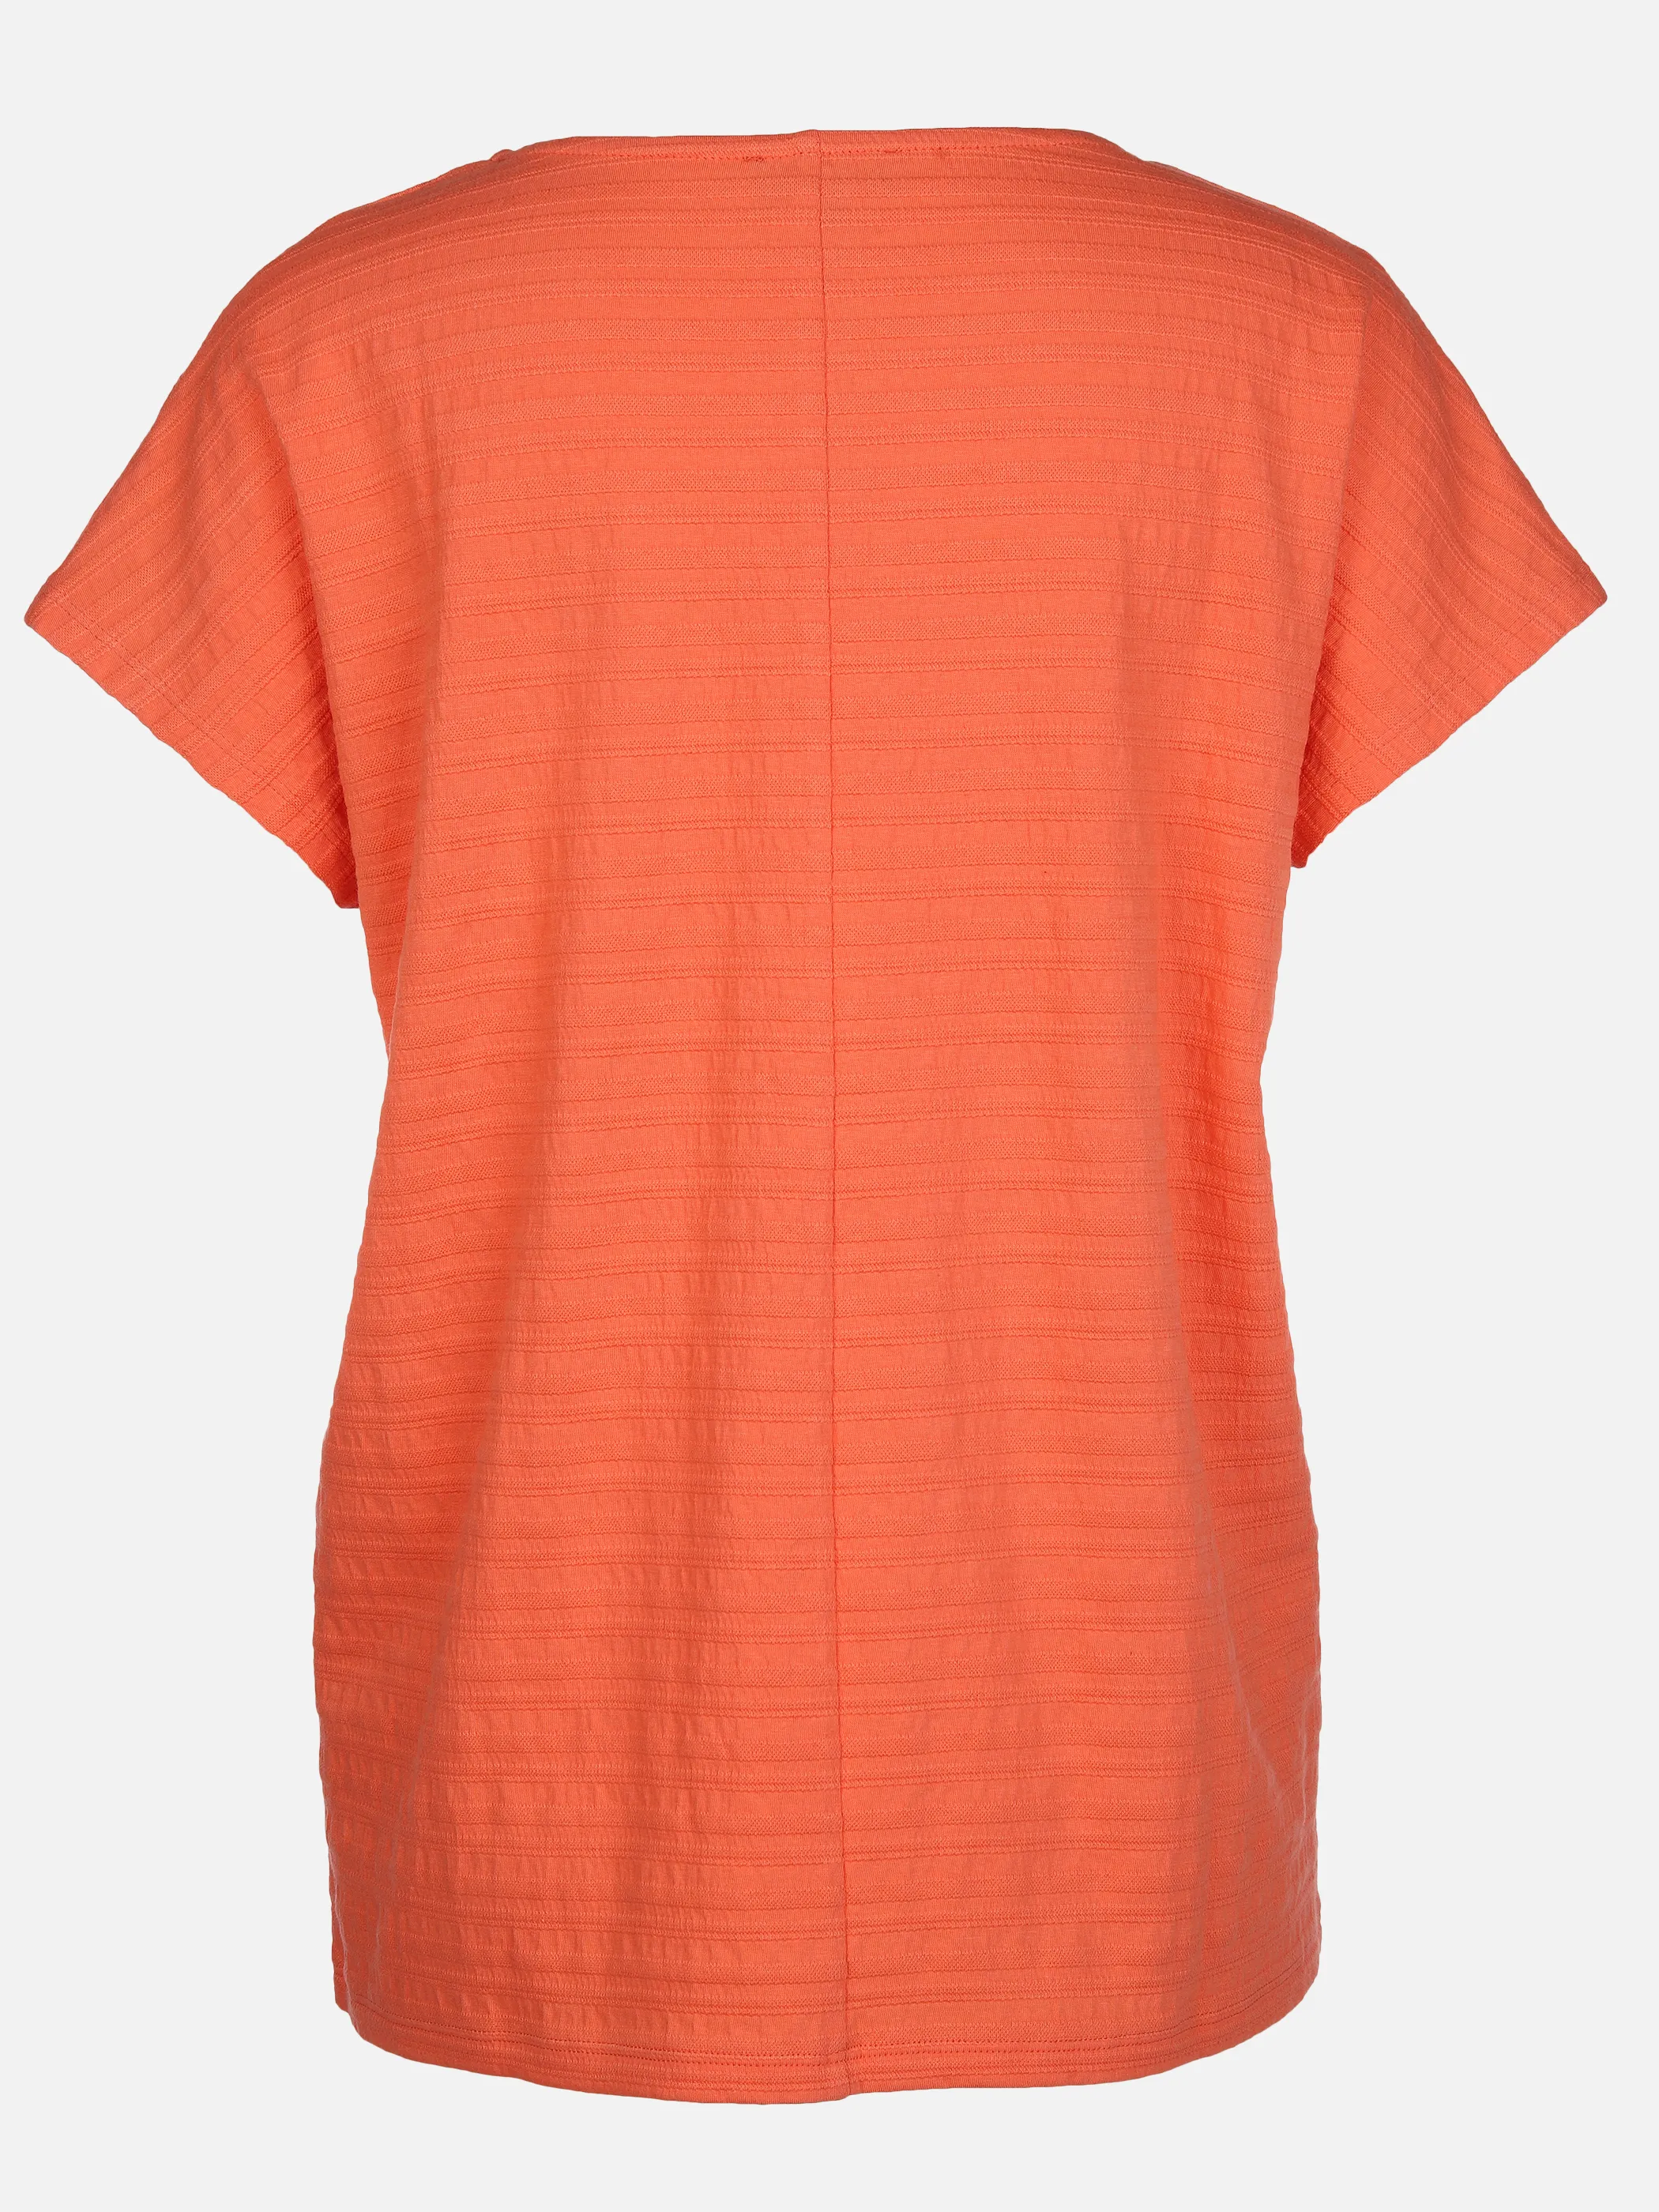 Sure Da-Struktur-Jacquard-Shirt Orange 890104 PAPAYA 2